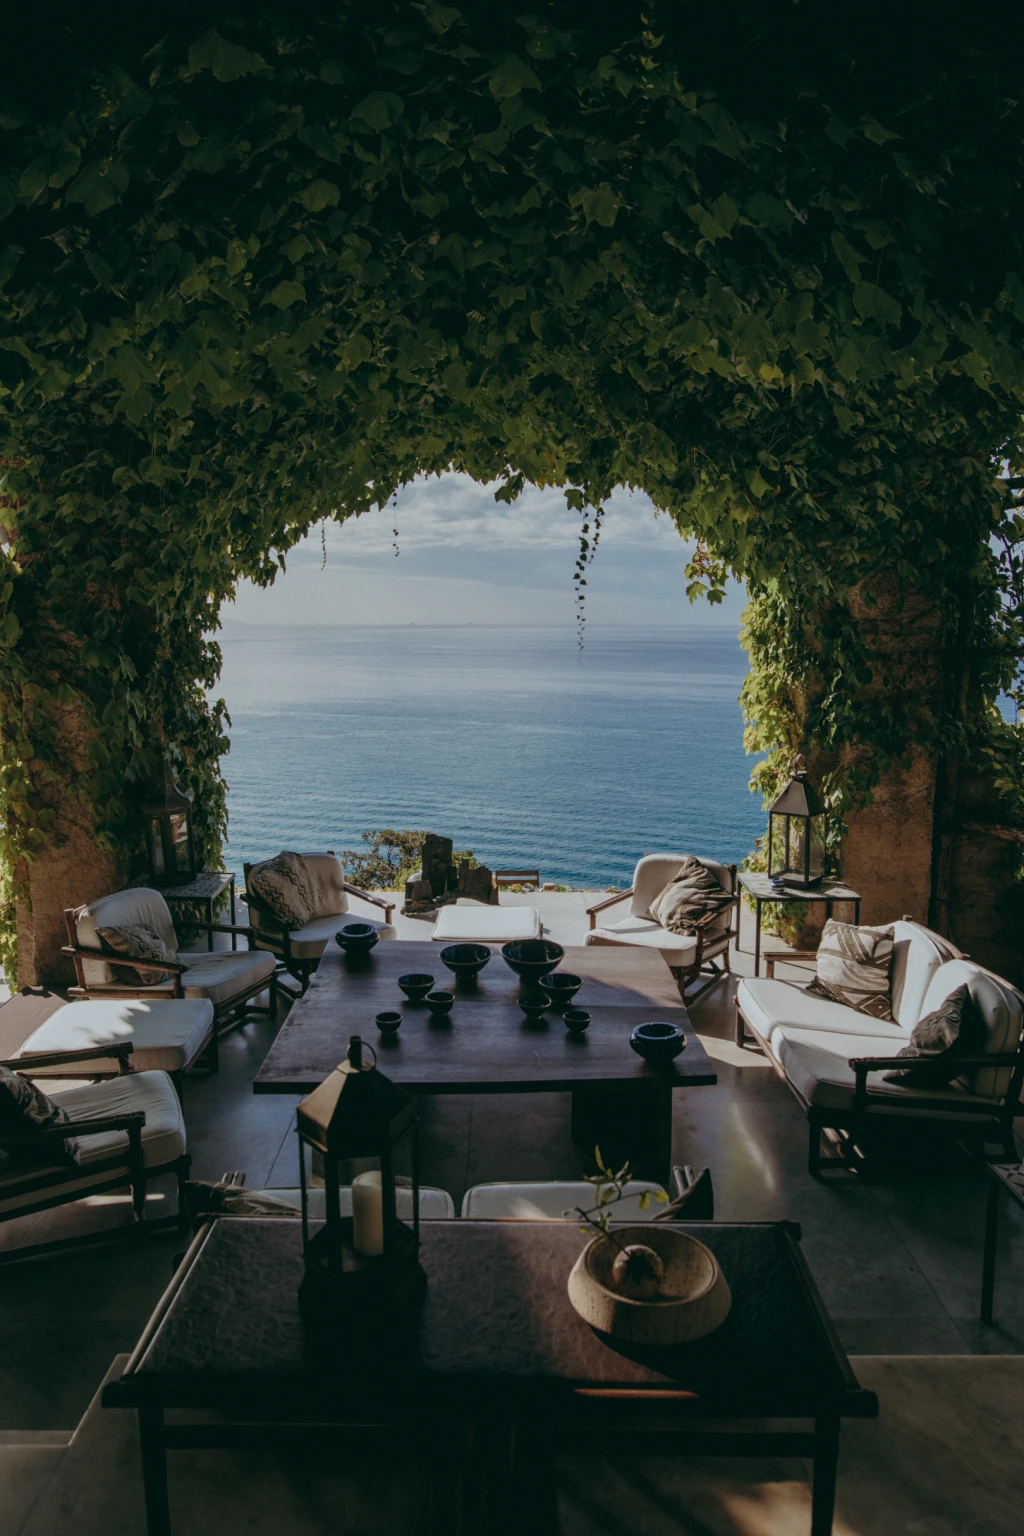 Stunning luxury villa on the Amalfi coast